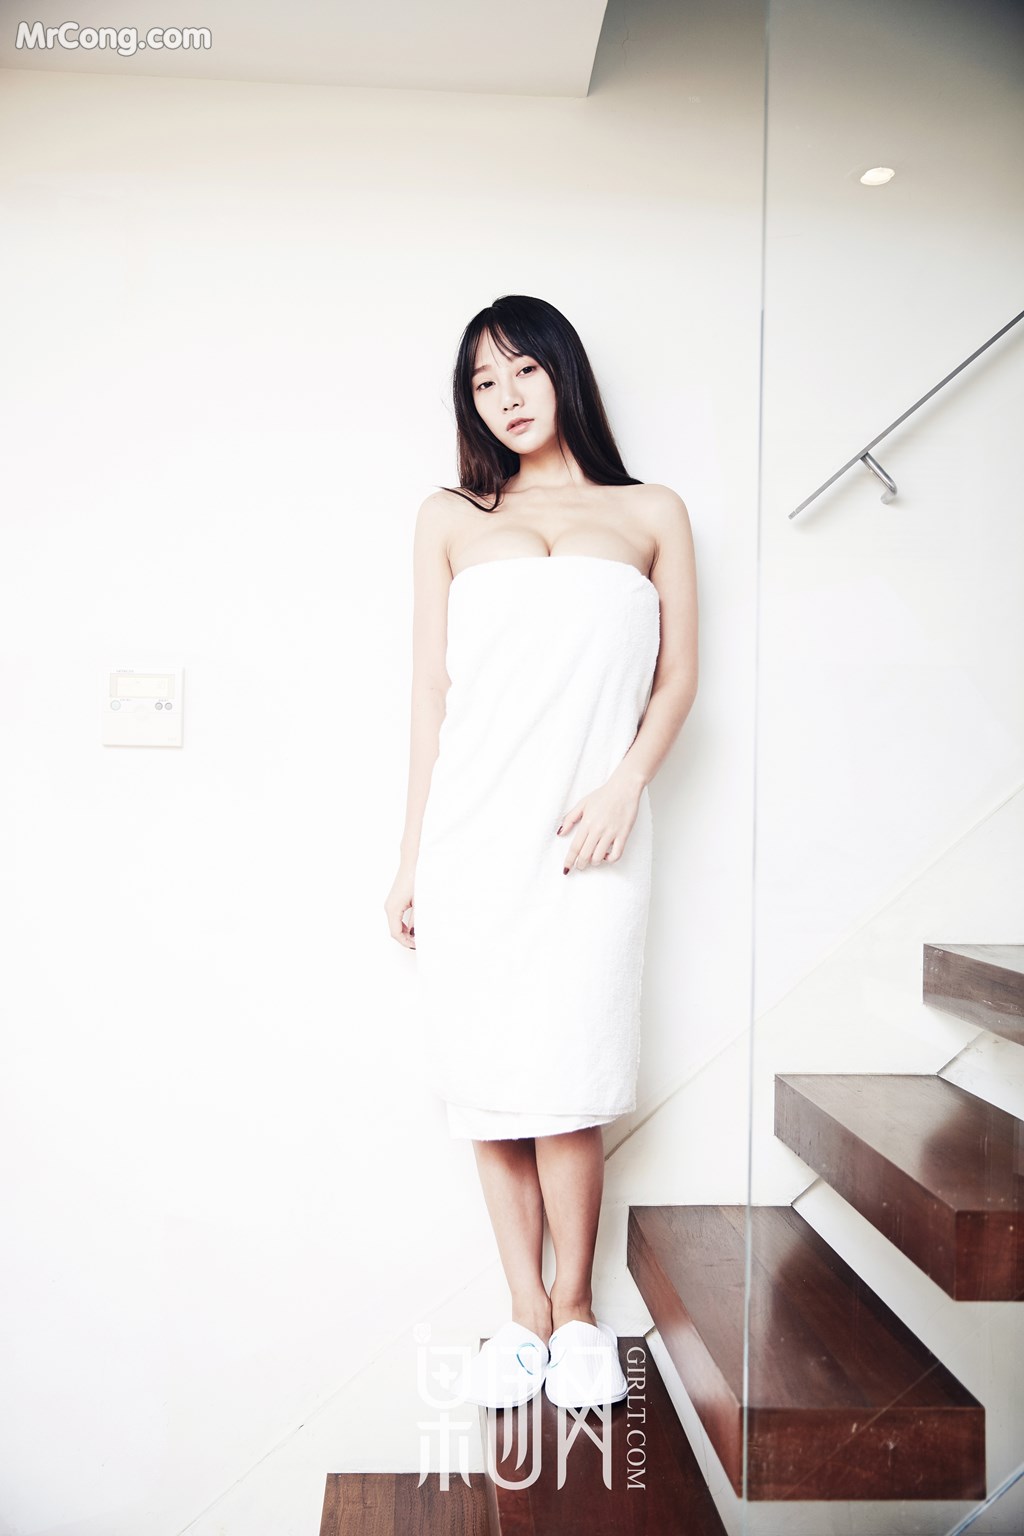 GIRLT No.116: Model He Jia Ying (何嘉颖) (59 photos) photo 1-1